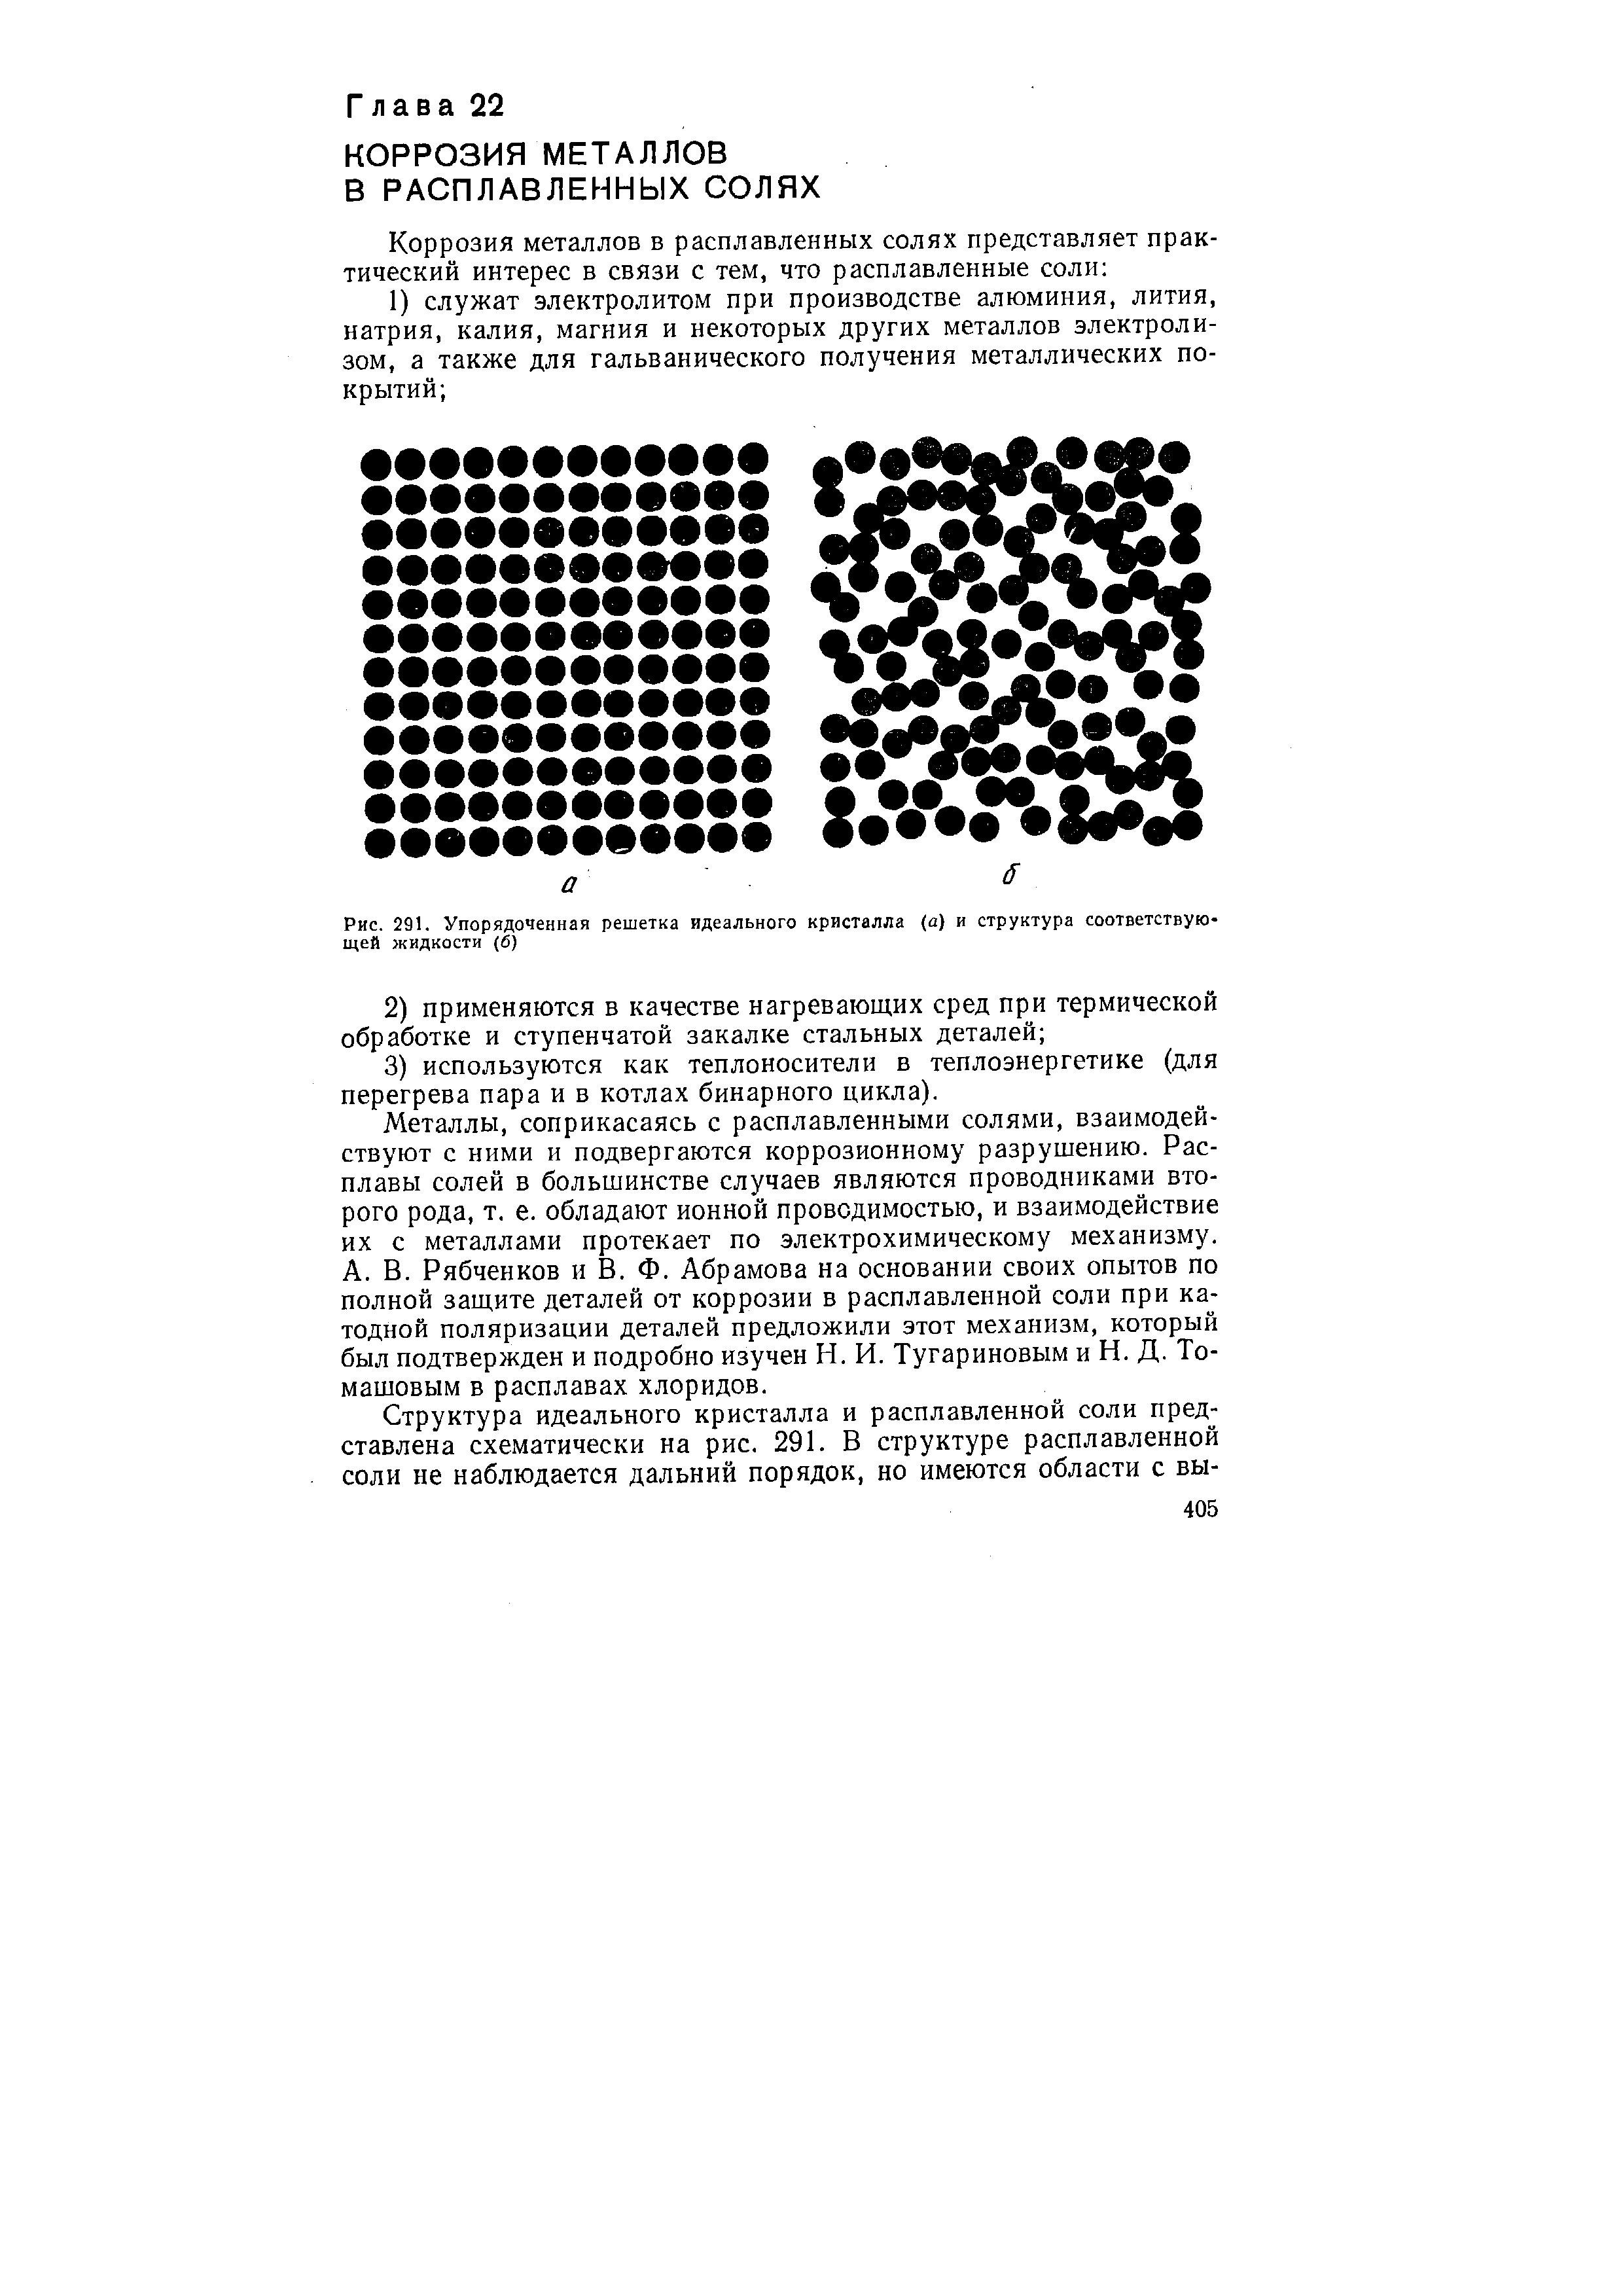 Рис. 291, Упорядоченная решетка <a href="/info/194104">идеального кристалла</a> (а) и структура соответствующей жидкости (б)
